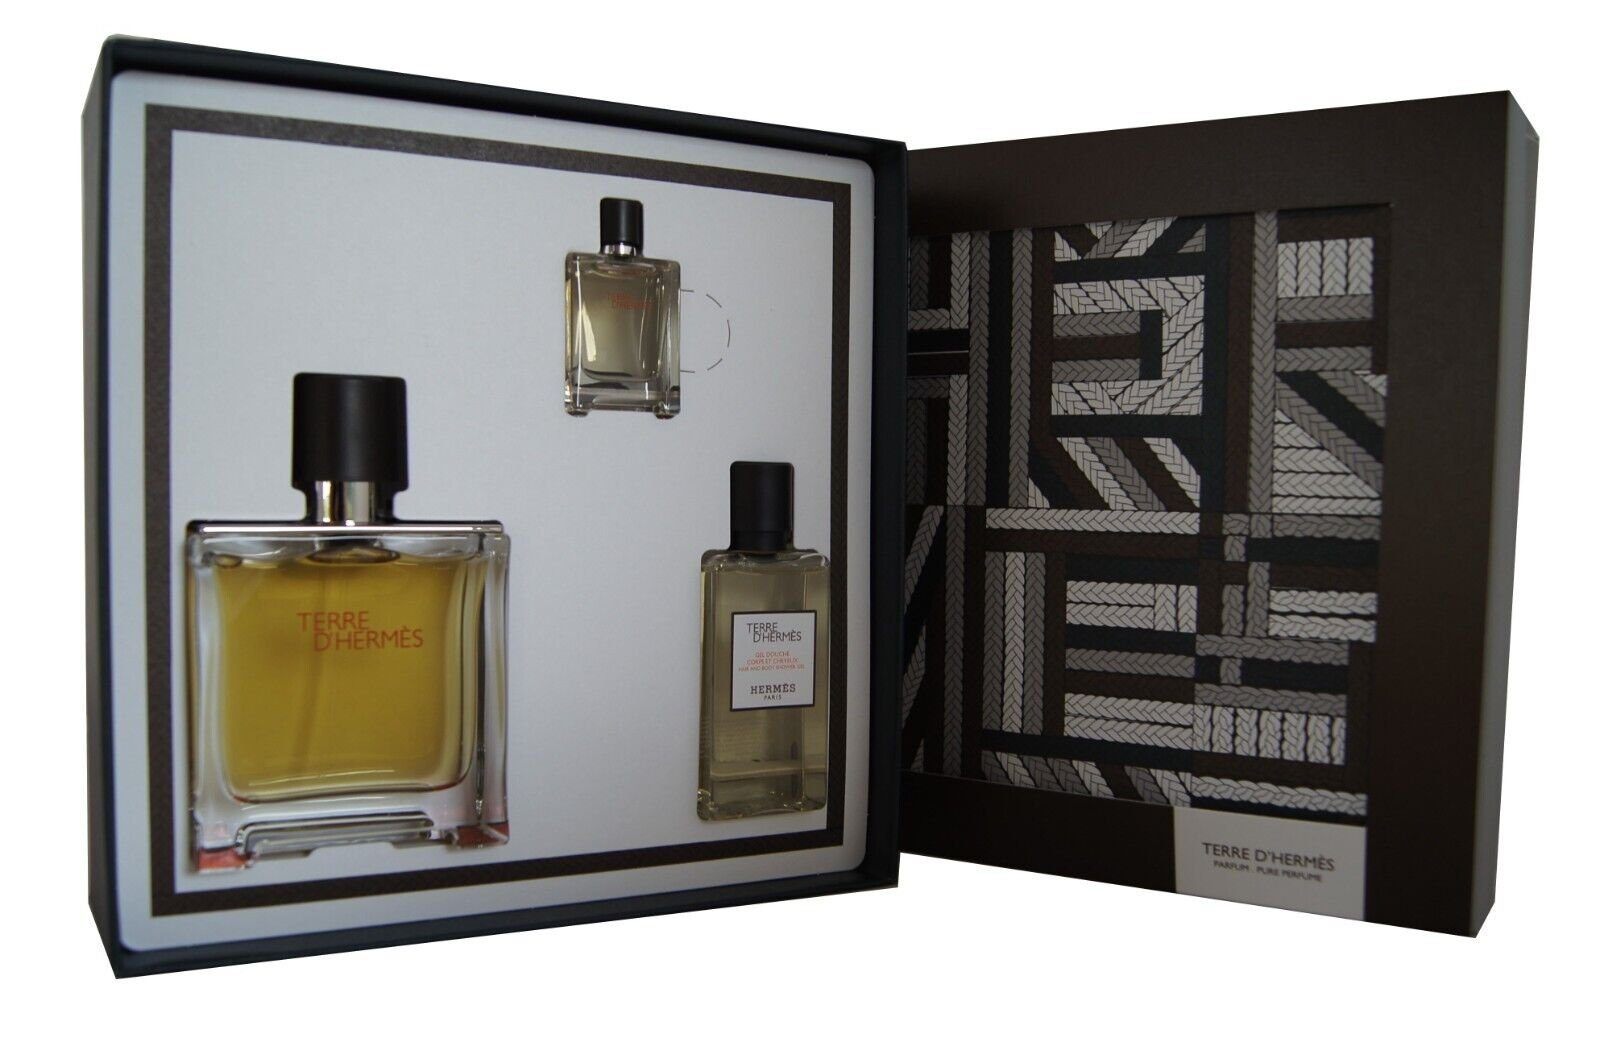 Terre D`Hermes 75ml. & HERMÈS + 1-tlg. Duft-Set Perfume 40ml., 5ml. Shower Hermes Pure Gel